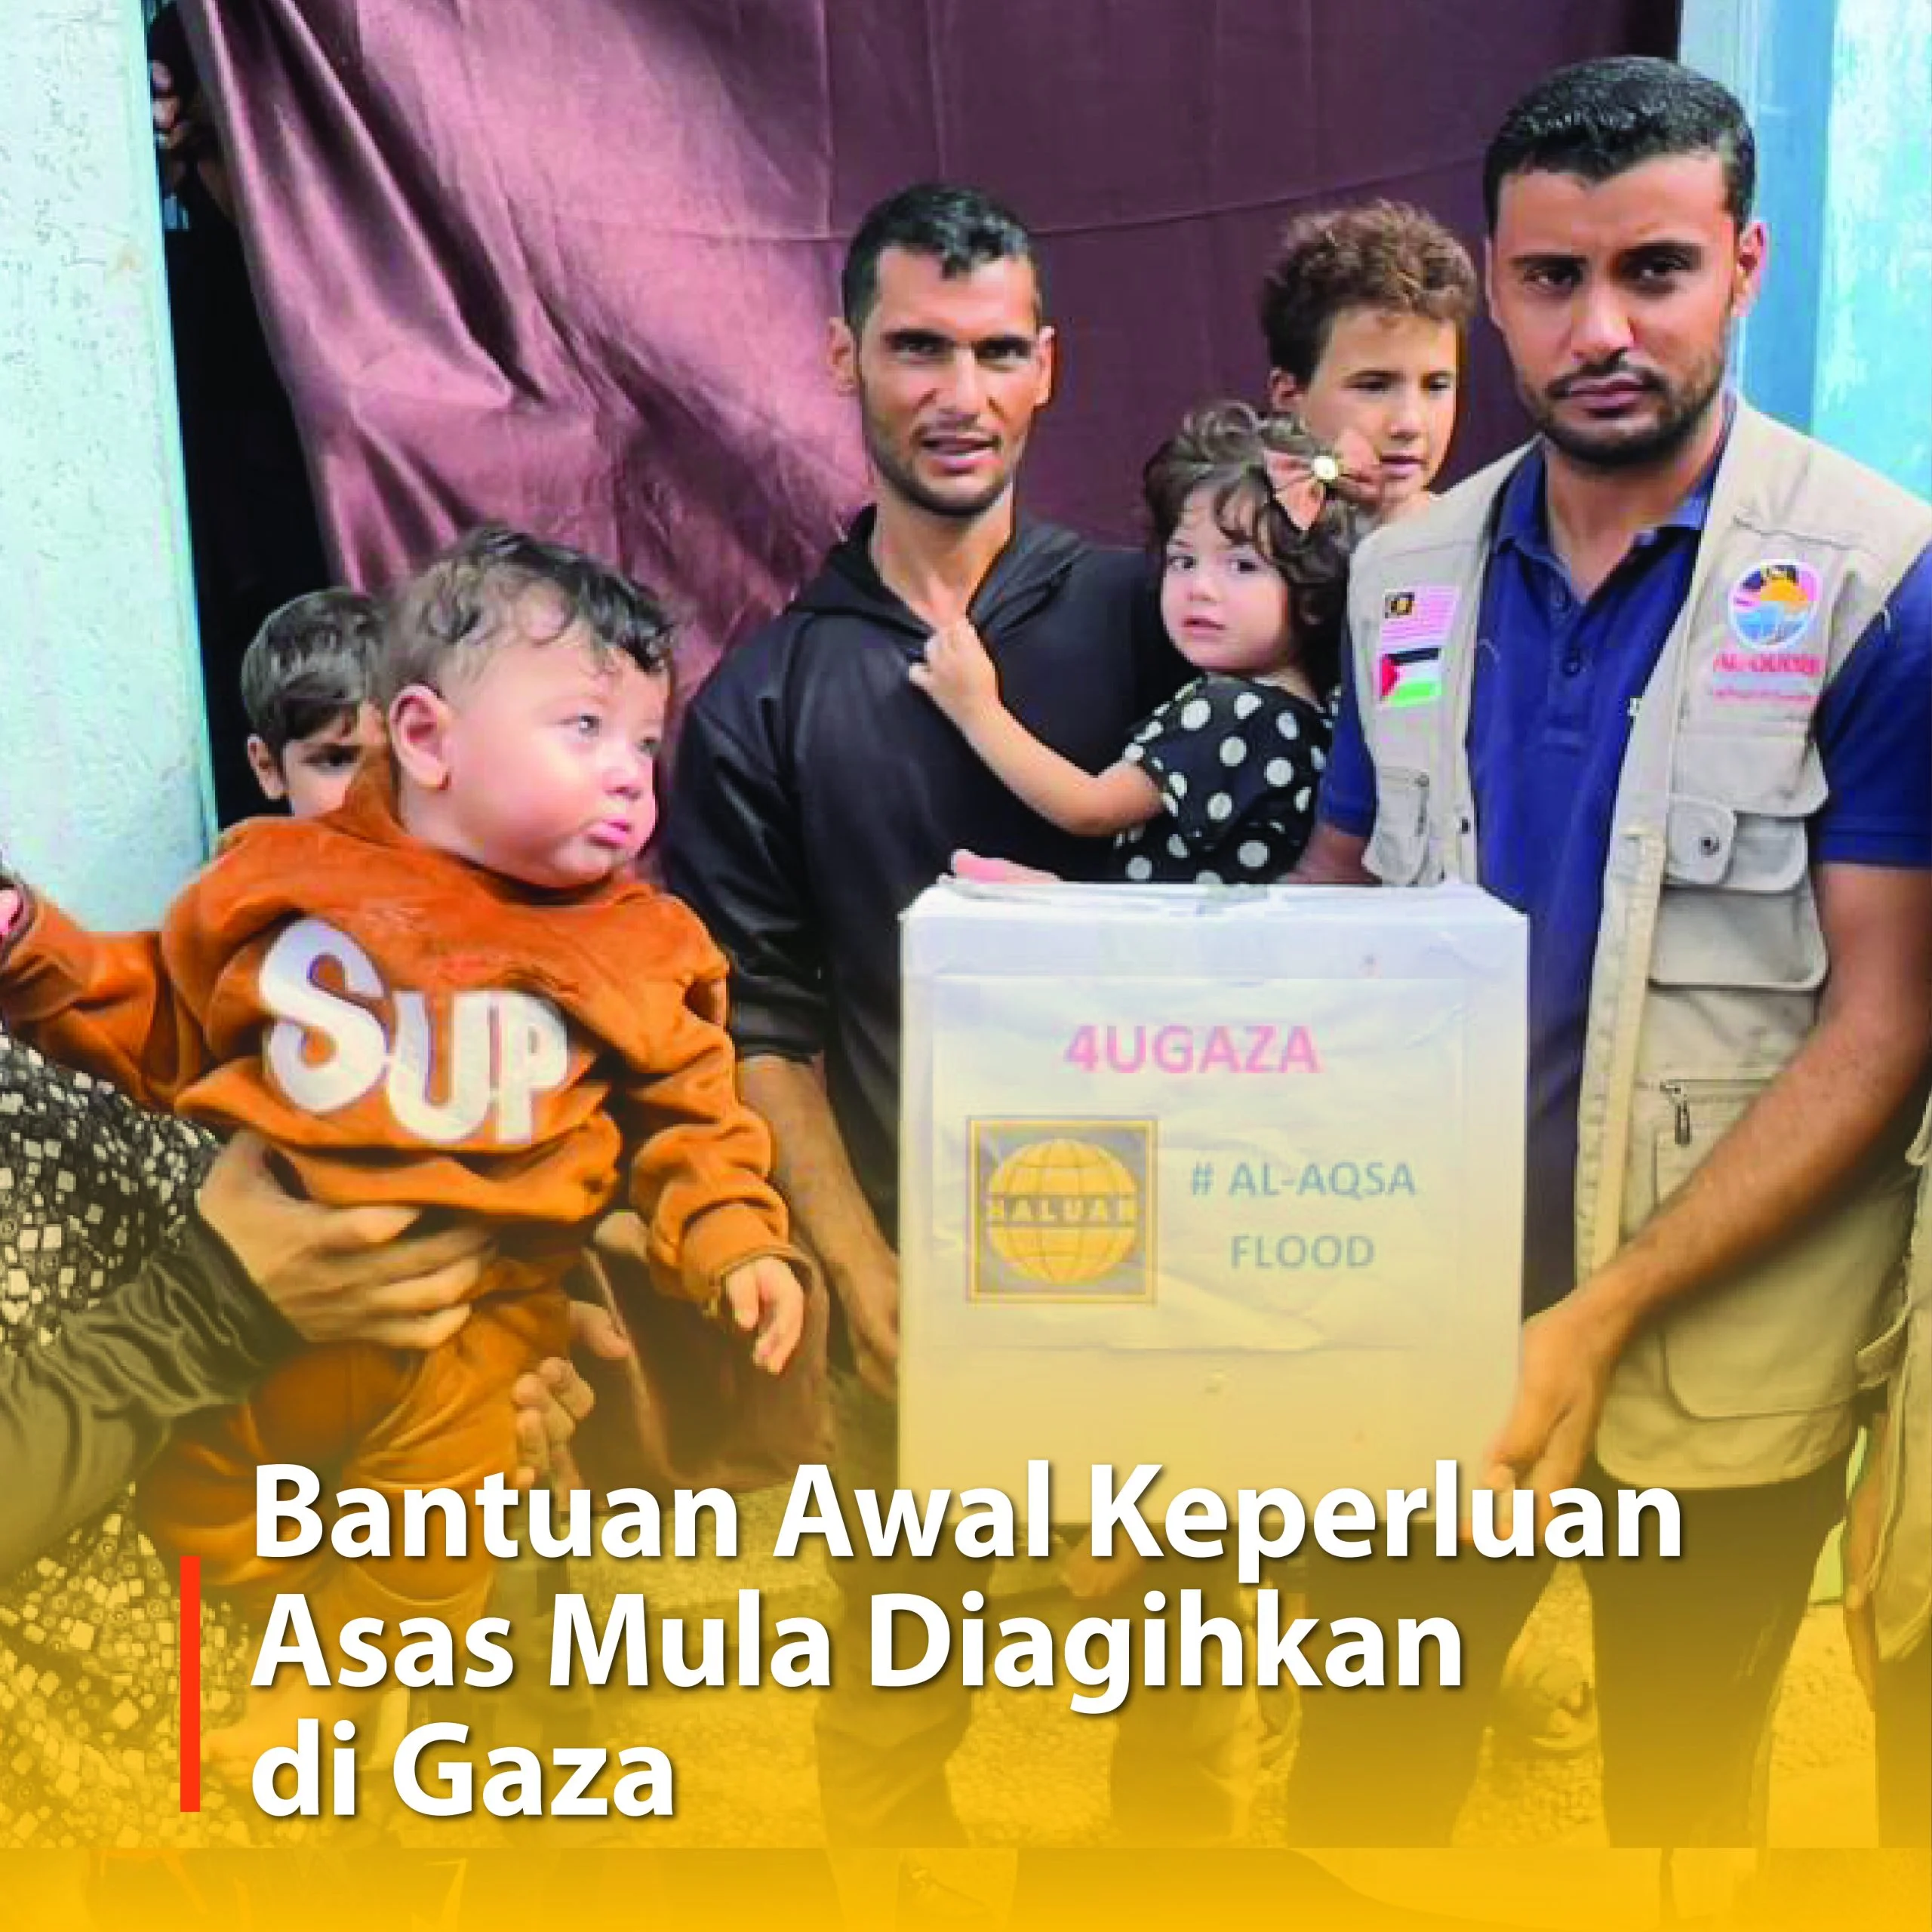 Bantuan Awal Keperluan Asas Mula Diagihkan di Gaza